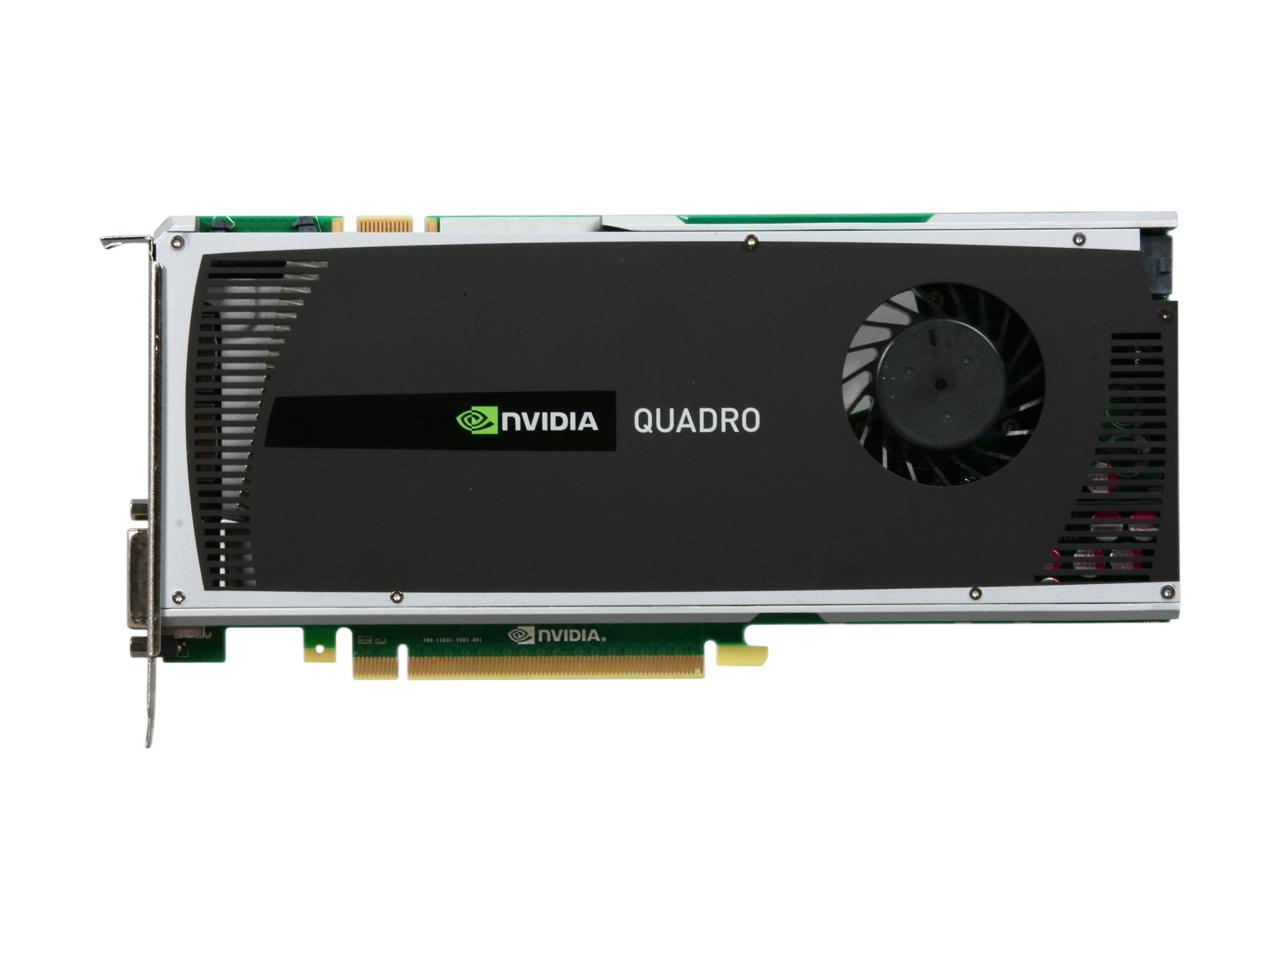 PNY NVIDIA Quadro 4000 2GB 256-bit GDDR5 PCI Express 2.0 x16 Workstation Video Card VCQ4000-PB